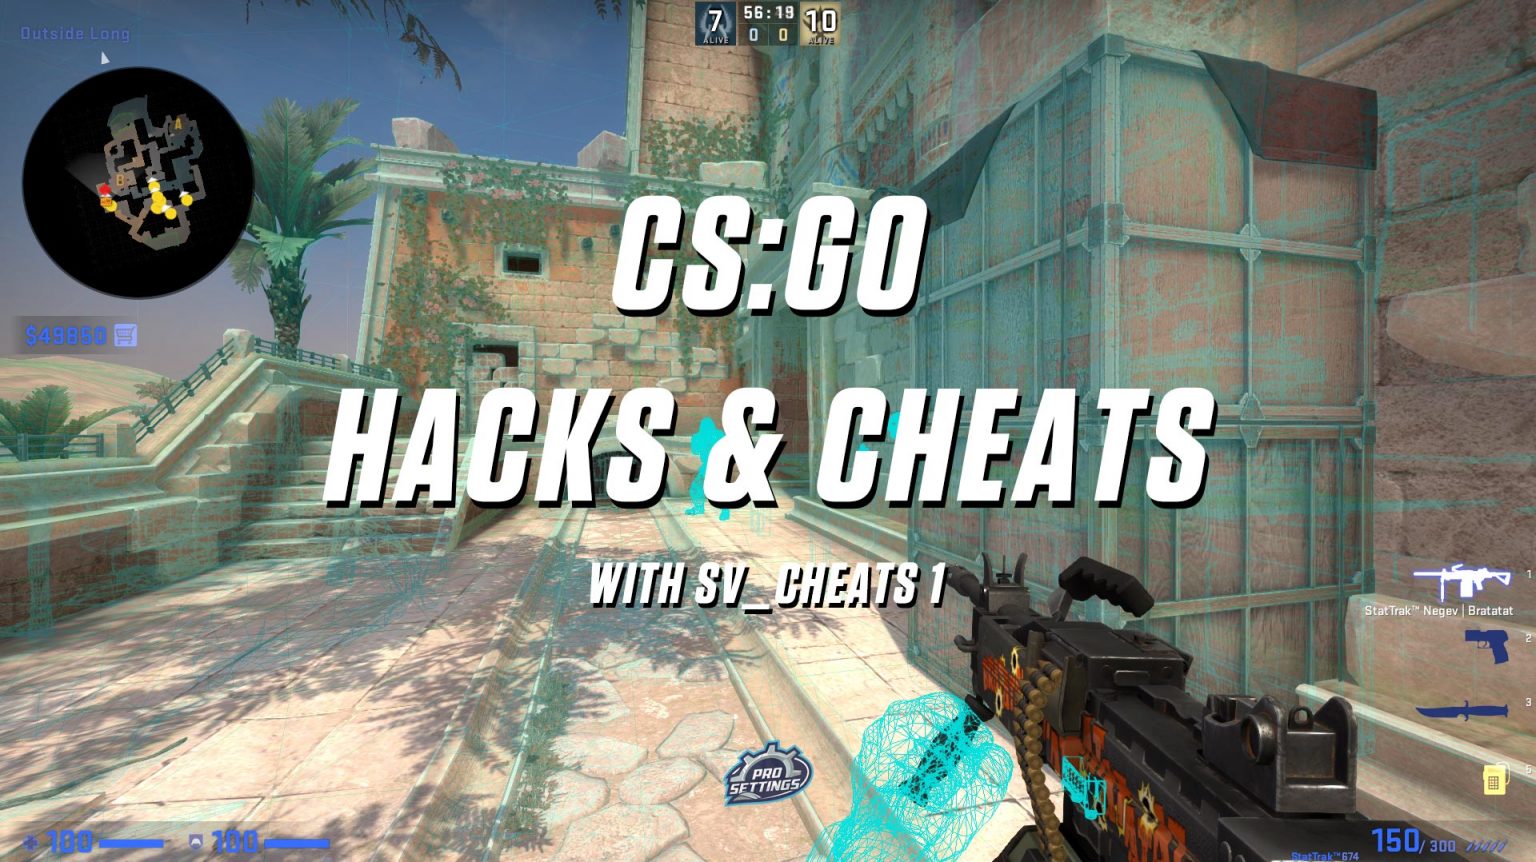 CS:GO Hacks & Cheats with sv_cheats 1 [wallhack + aimbot] - ProSettings.com